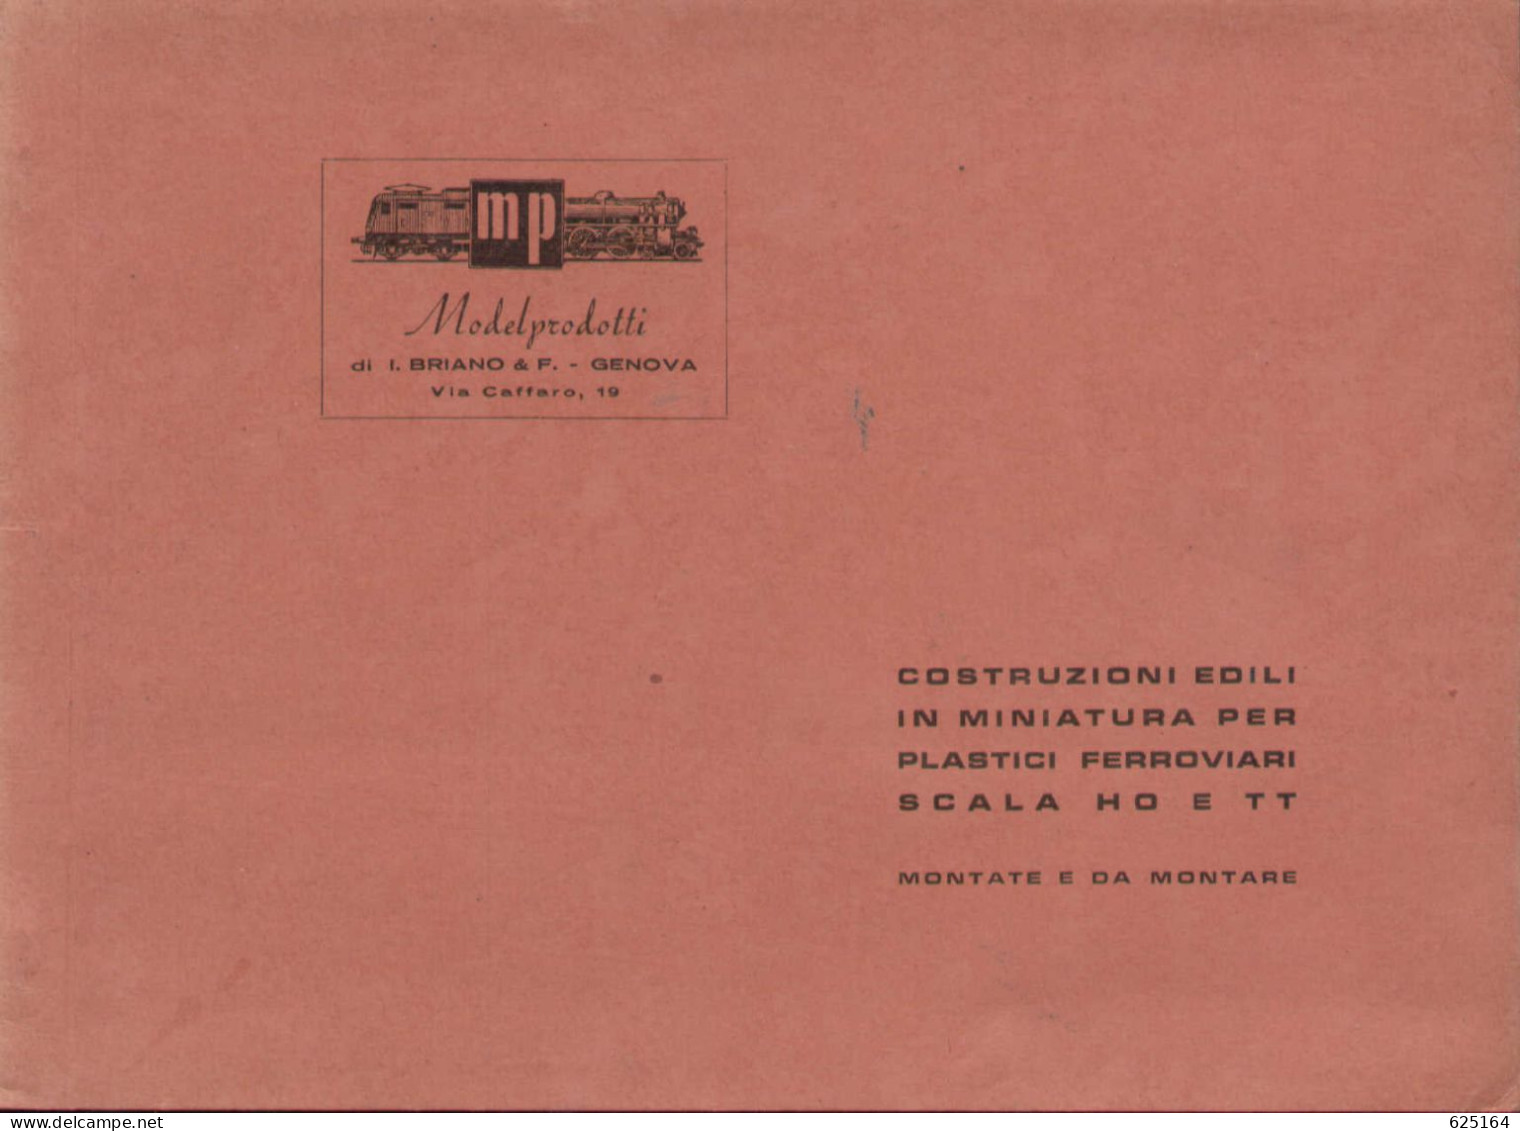 Catalogue MP ModelProdotti 1955? Ed. Italo Briano Genova Accessori HO  - En Italien - Non Classés